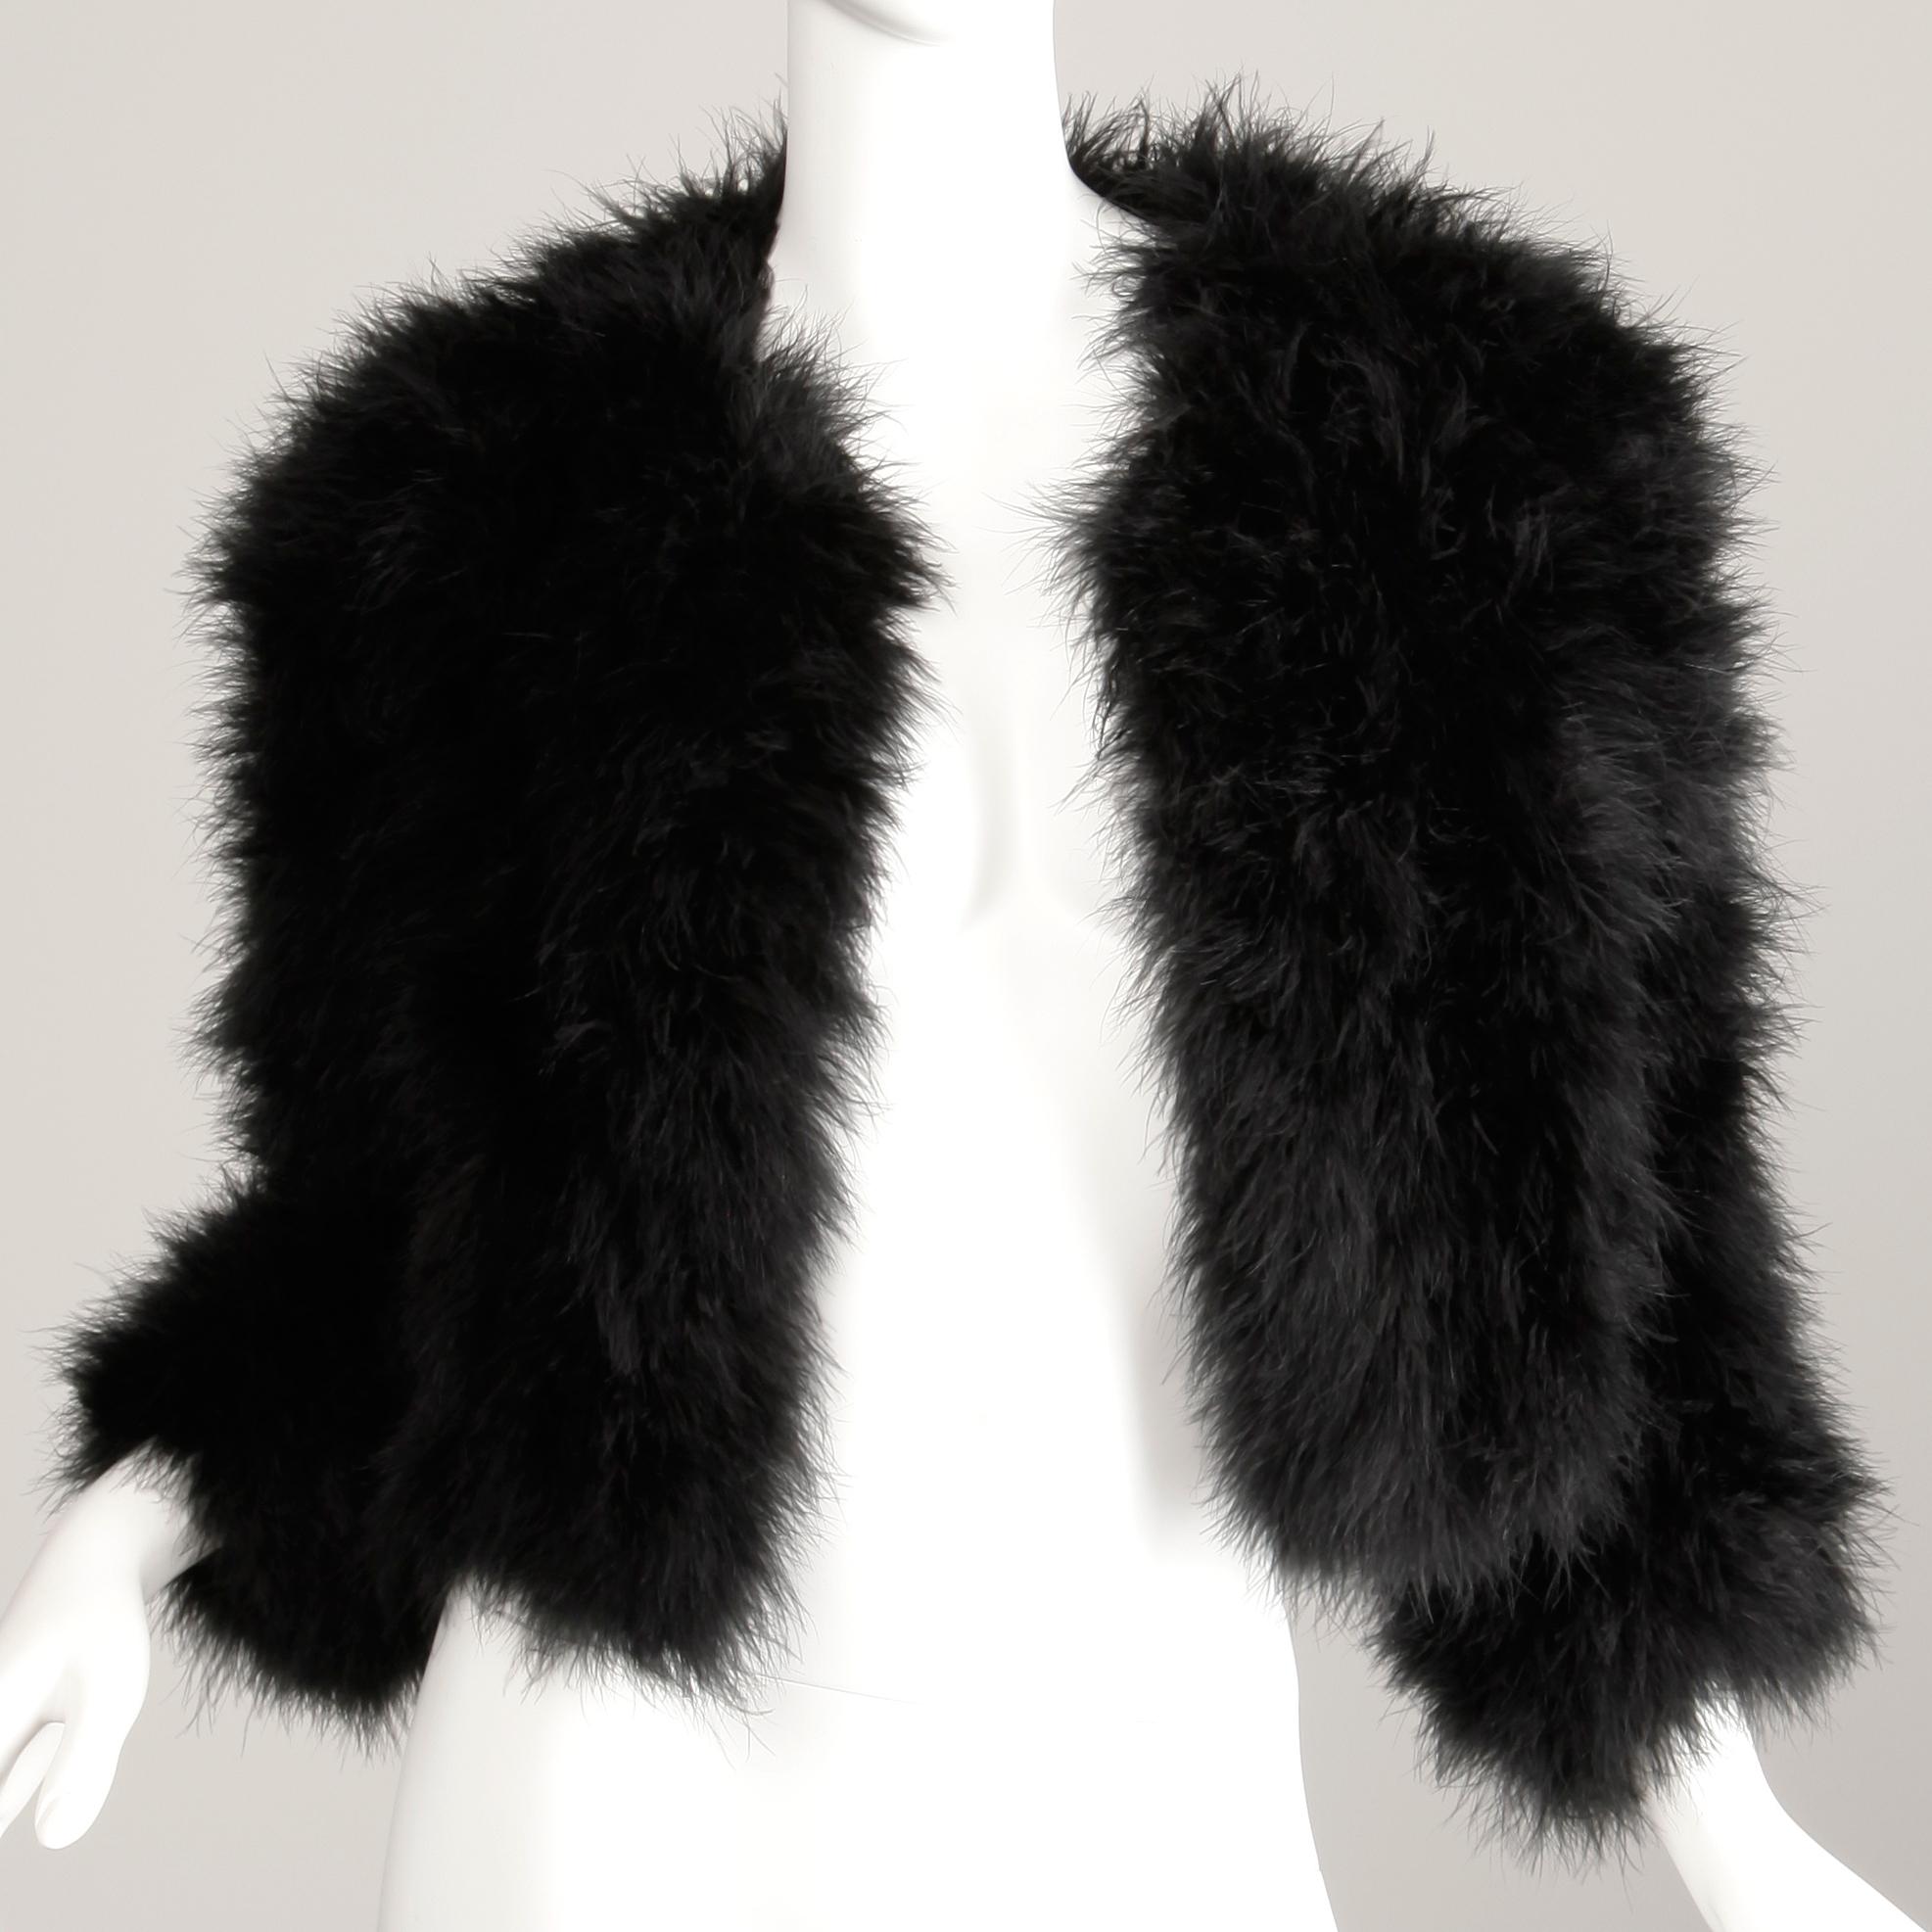 Adrienne Landau Fur - For Sale on 1stDibs | adrienne landau fox fur vest, adrienne  landau fur jacket, adrienne landau sale